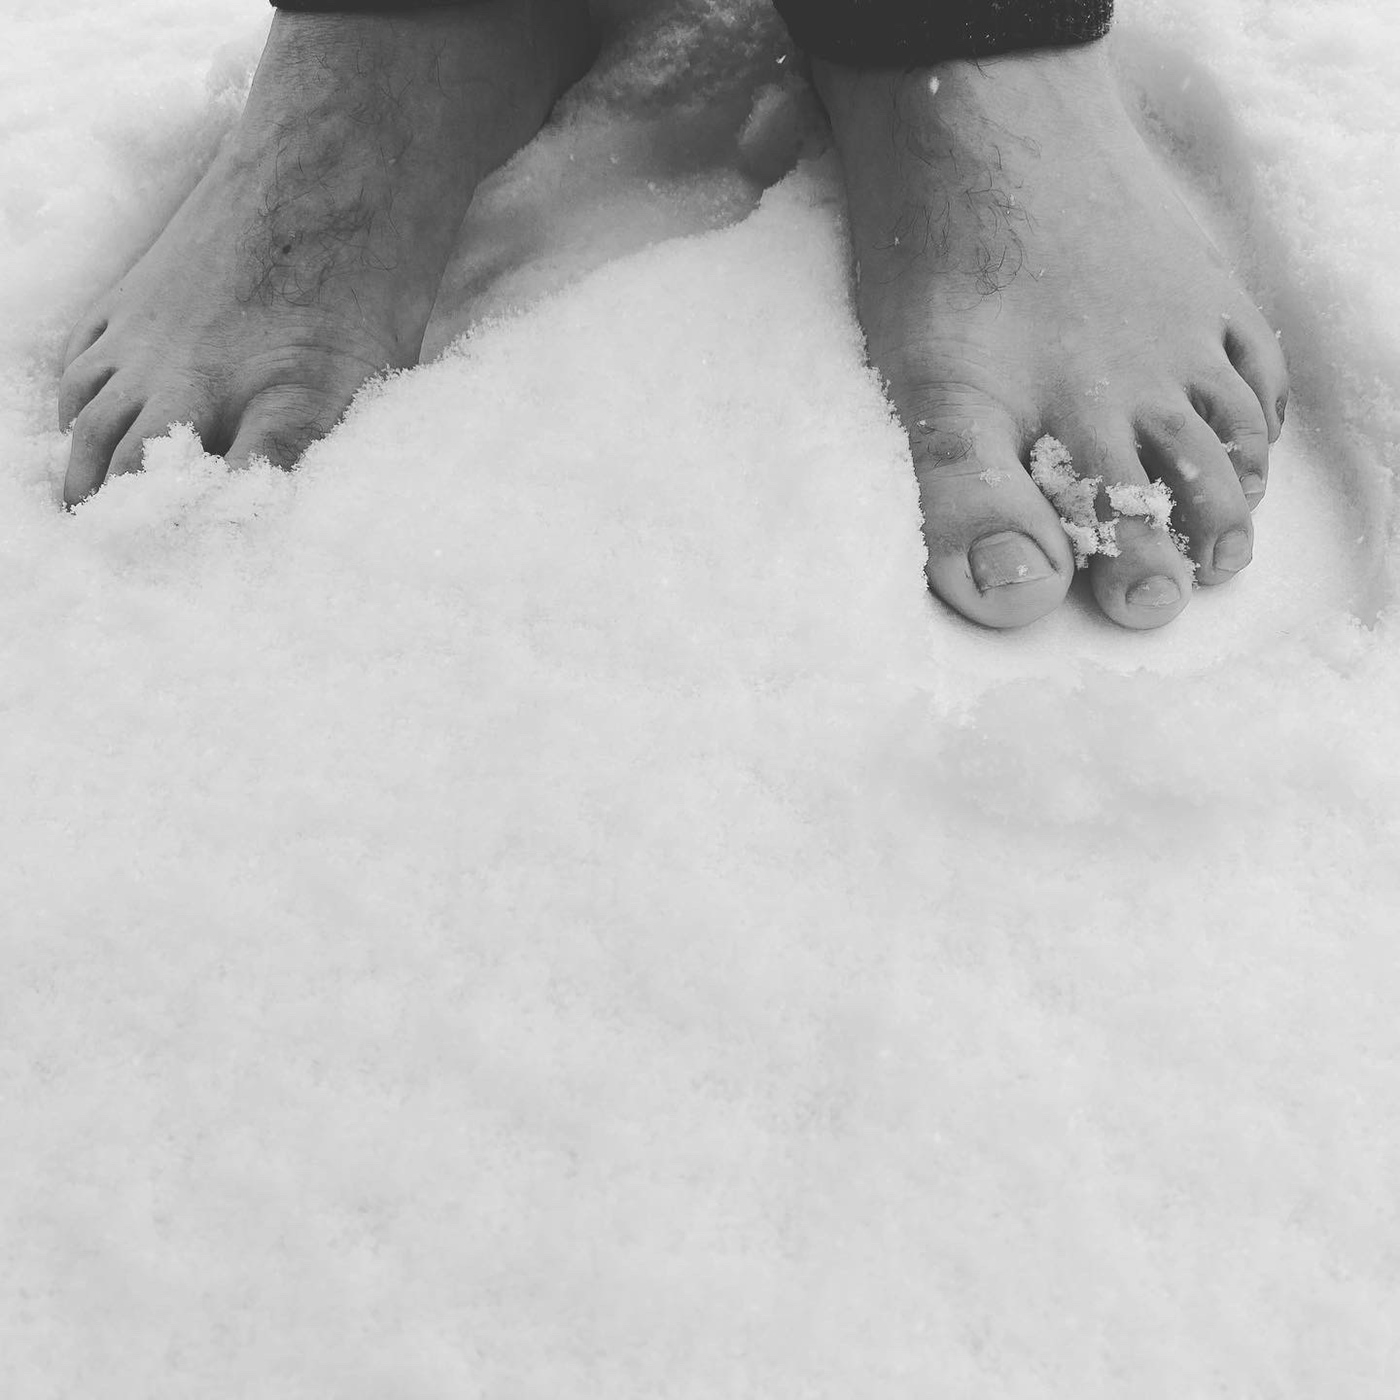 snow barefoot winter monochrome Schweiz Switzerland schnee